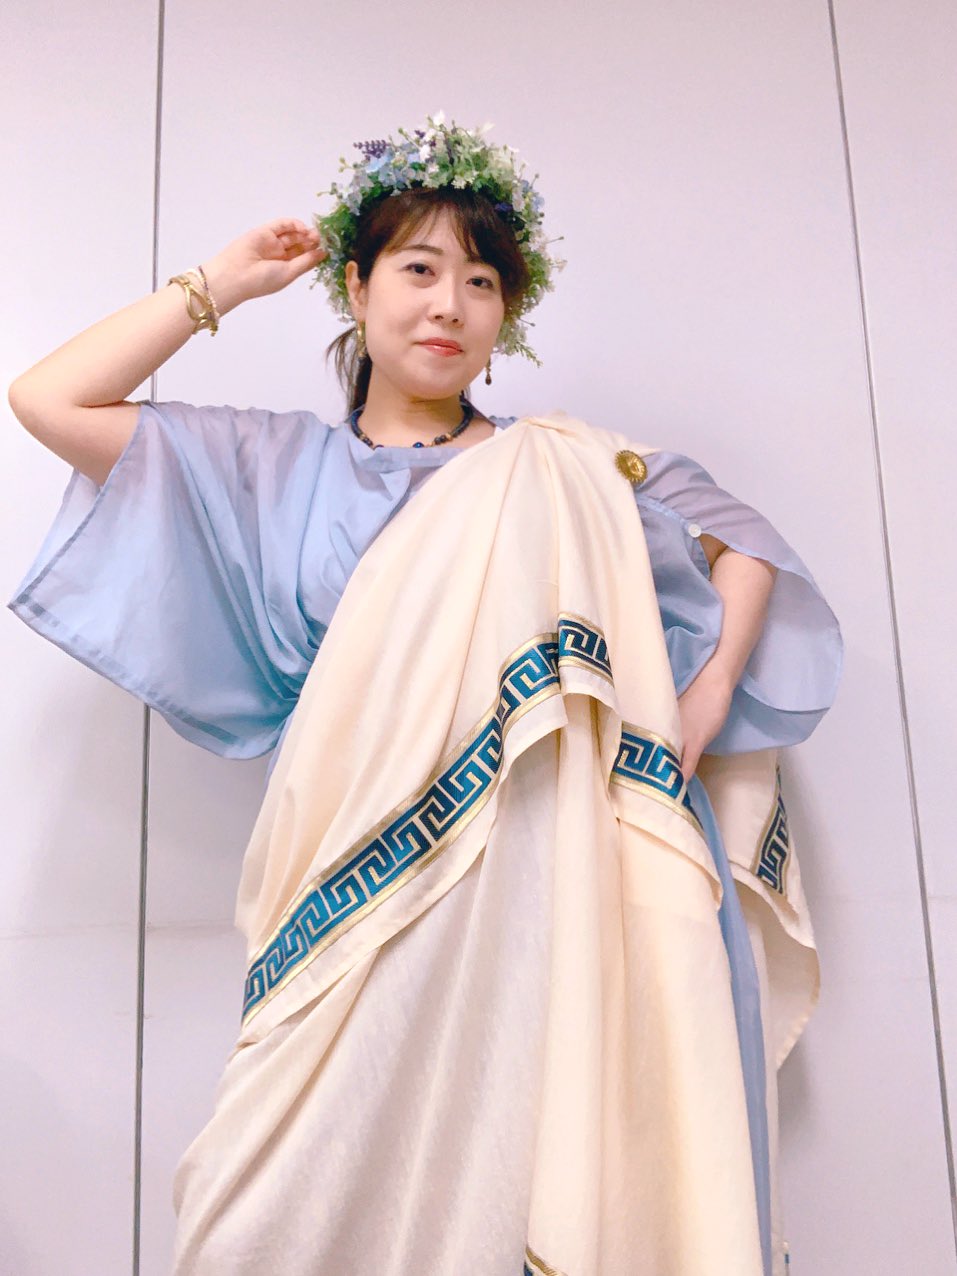 藤村シシン ハロウィンナイト 今日の古代ギリシャ服 下は濃い色のキトンで 上により淡い色を合わせるのは古代のオシャレ上級者の証ッ 割と評判良かったので ありがとうございます 古代人のファッションセンスは確かだ 私も初めてやりました